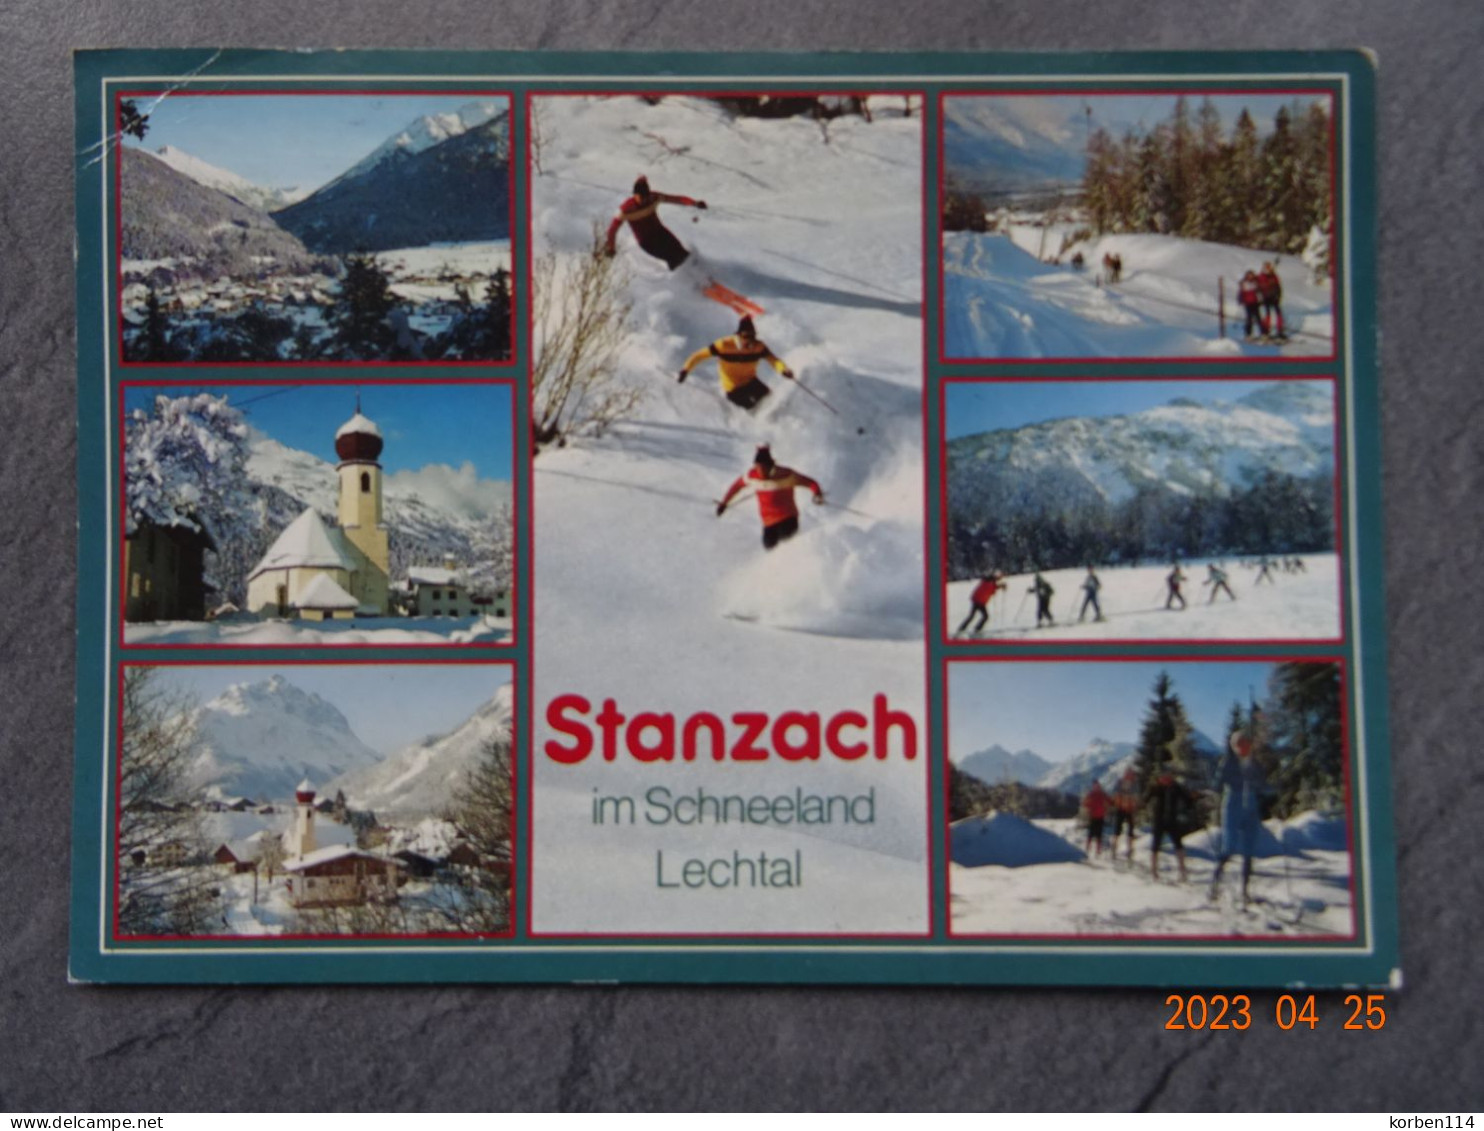 WINTERSPORTORT STANZACH  940 M. - Lechtal